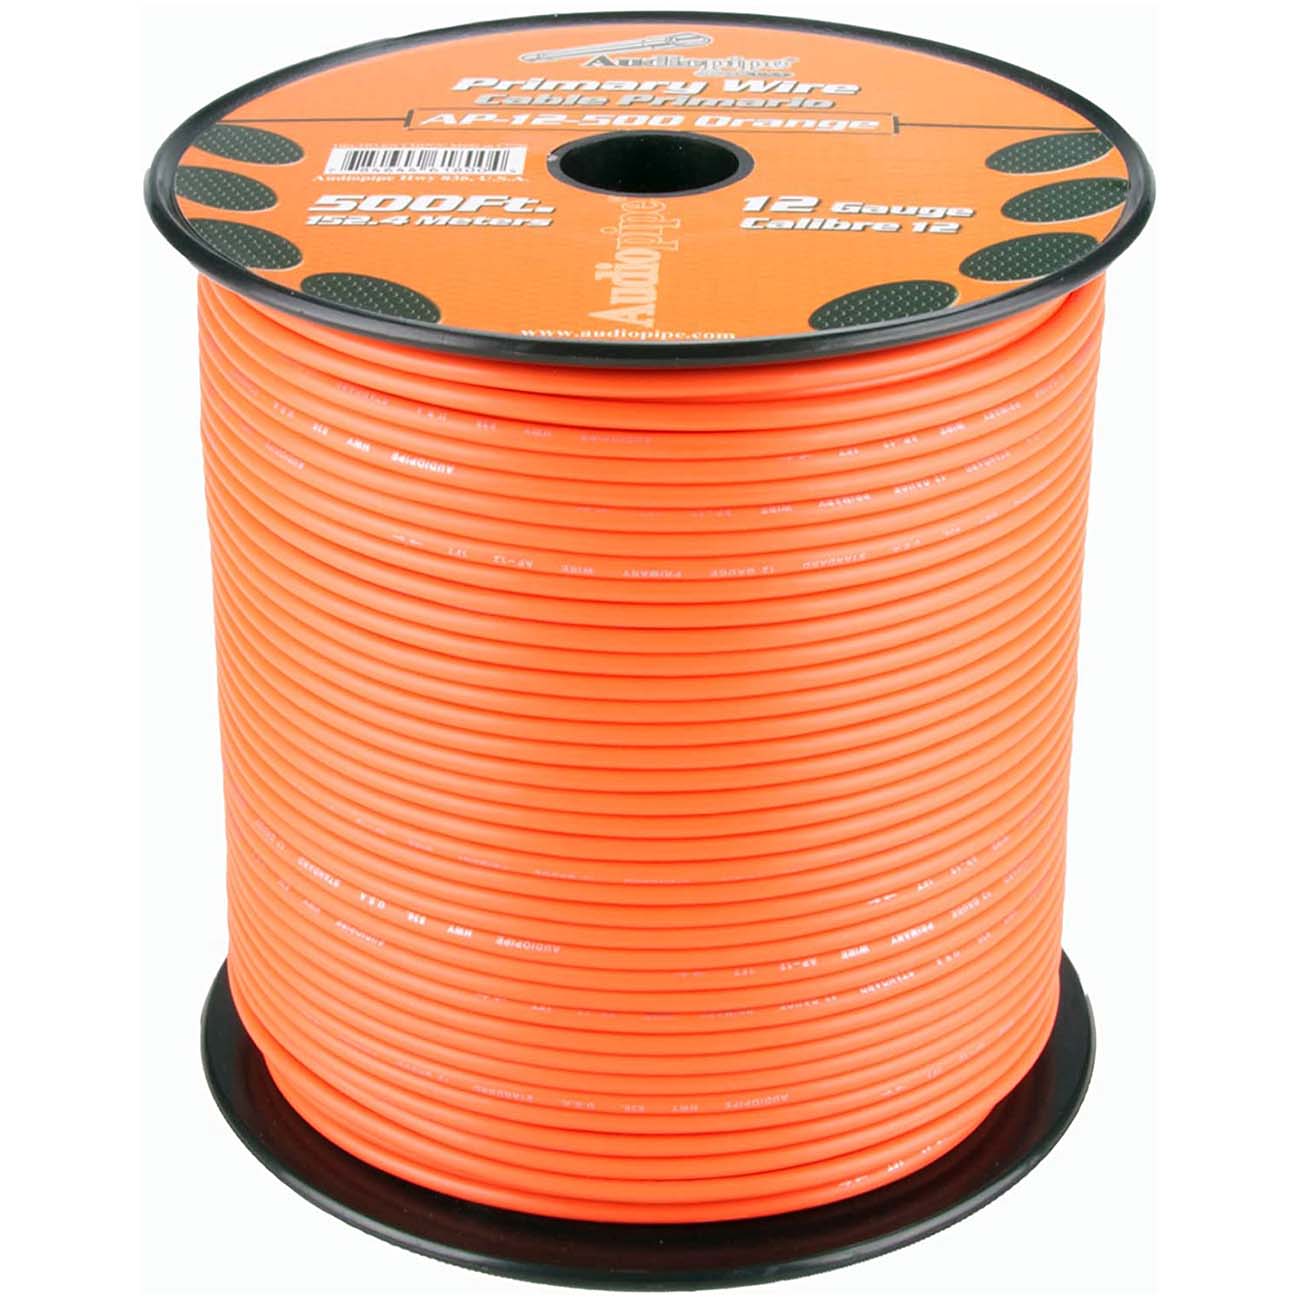 Audiopipe 12 Gauge 500ft Primary Wire Orange